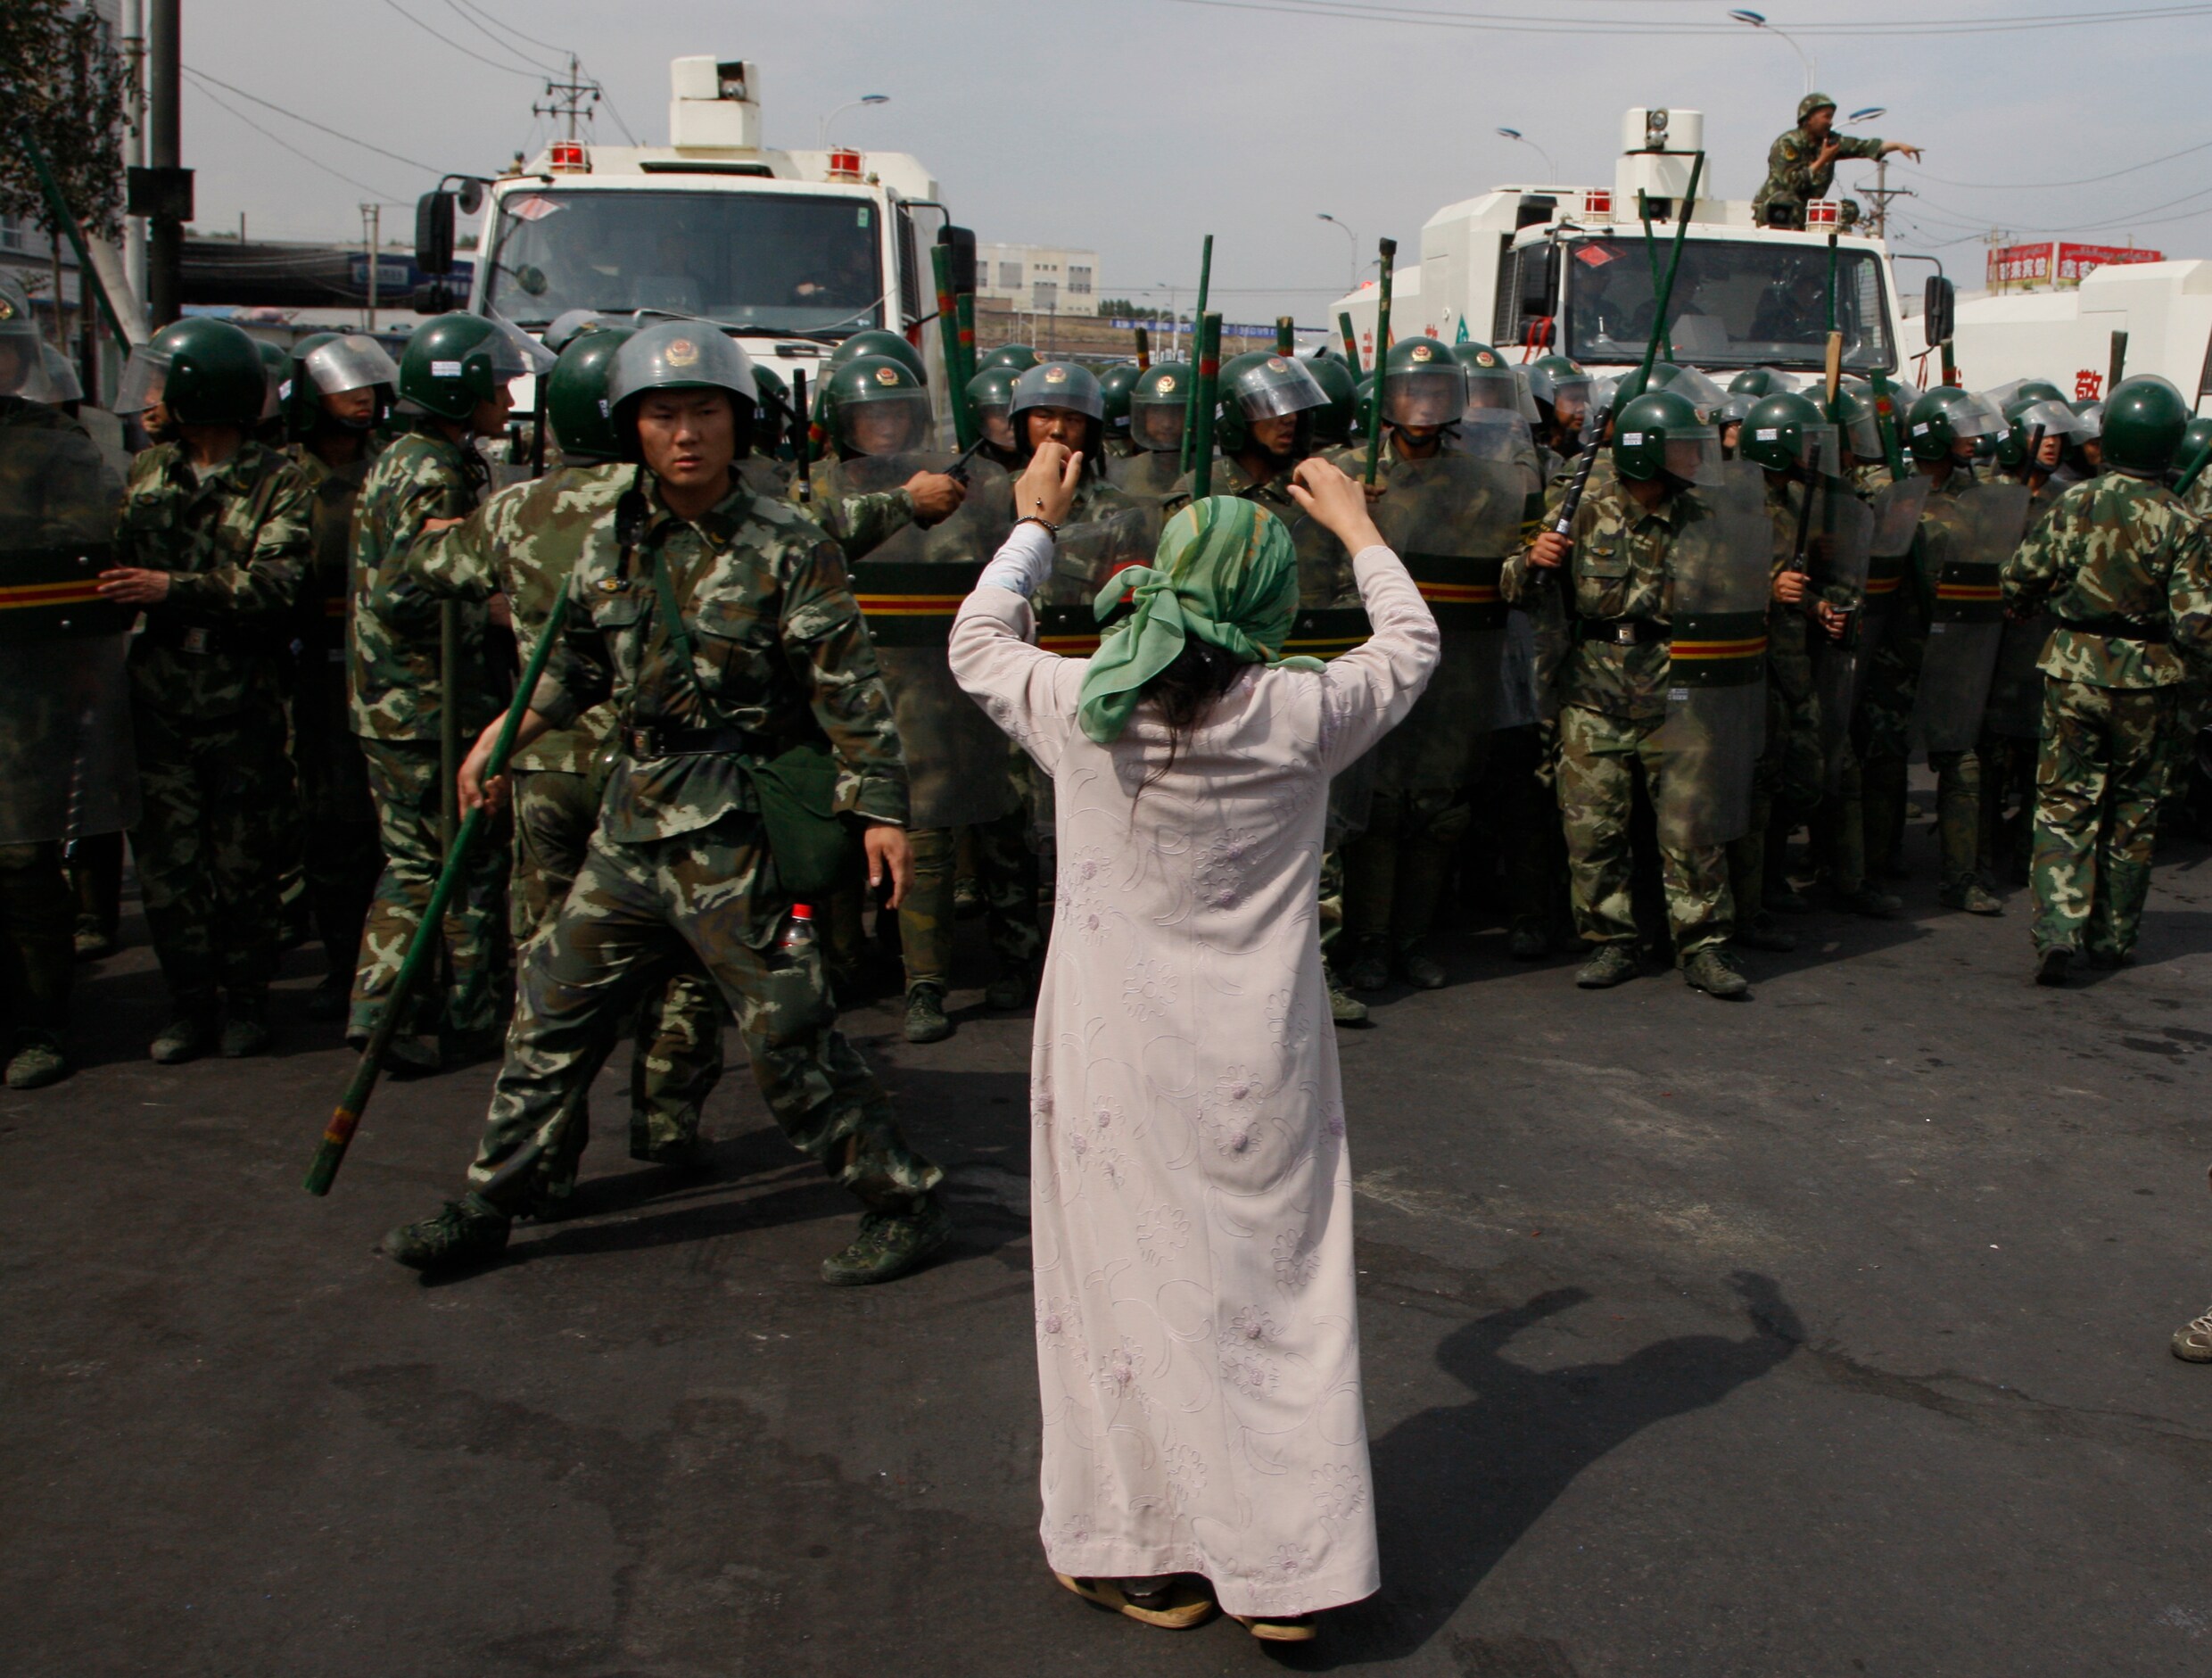 22 landen, waaronder België, vragen China te stoppen met opsluiten van Oeigoeren